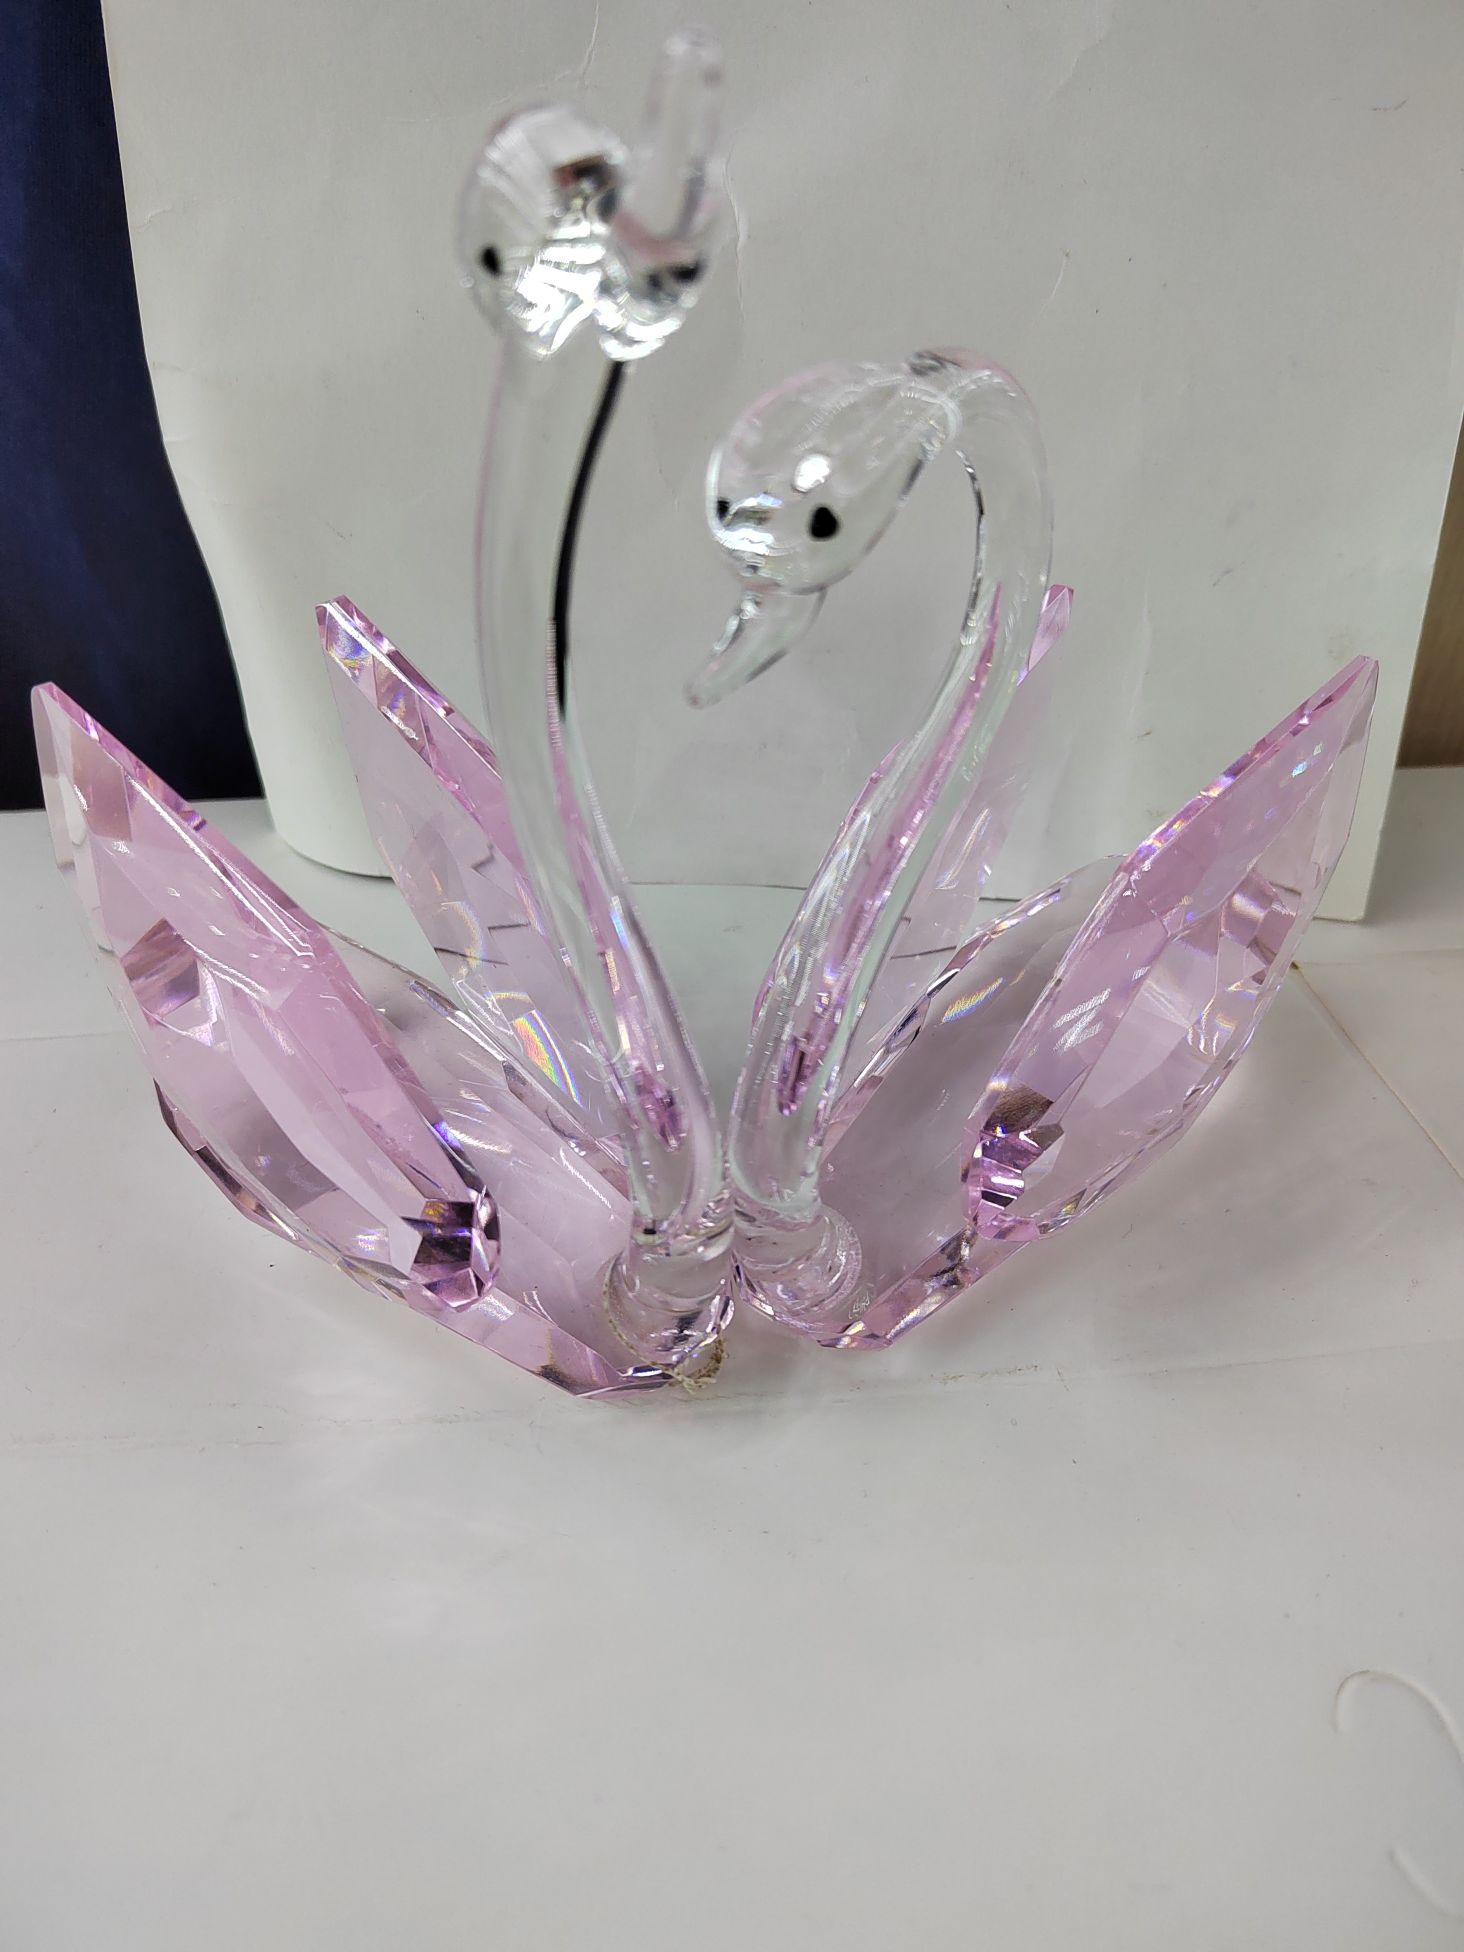 思文工艺水晶玻璃120mm粉色天鹅摆件7887—025详情图4